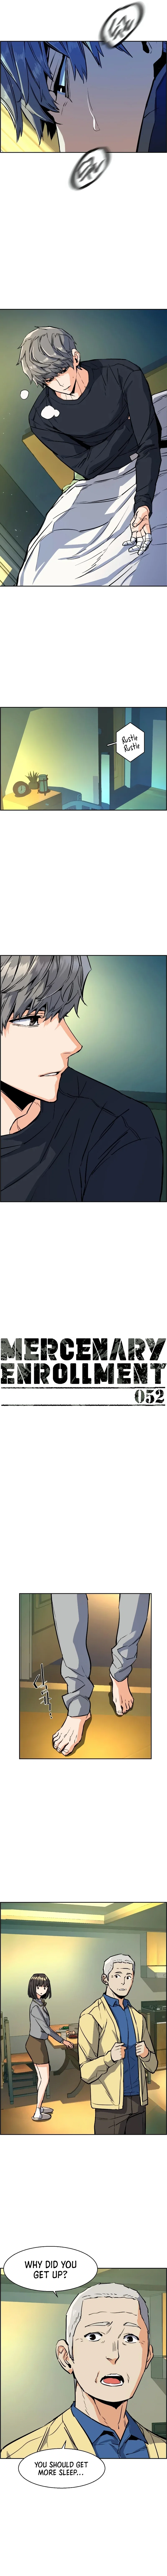 mercenary-enrollment-chap-52-3